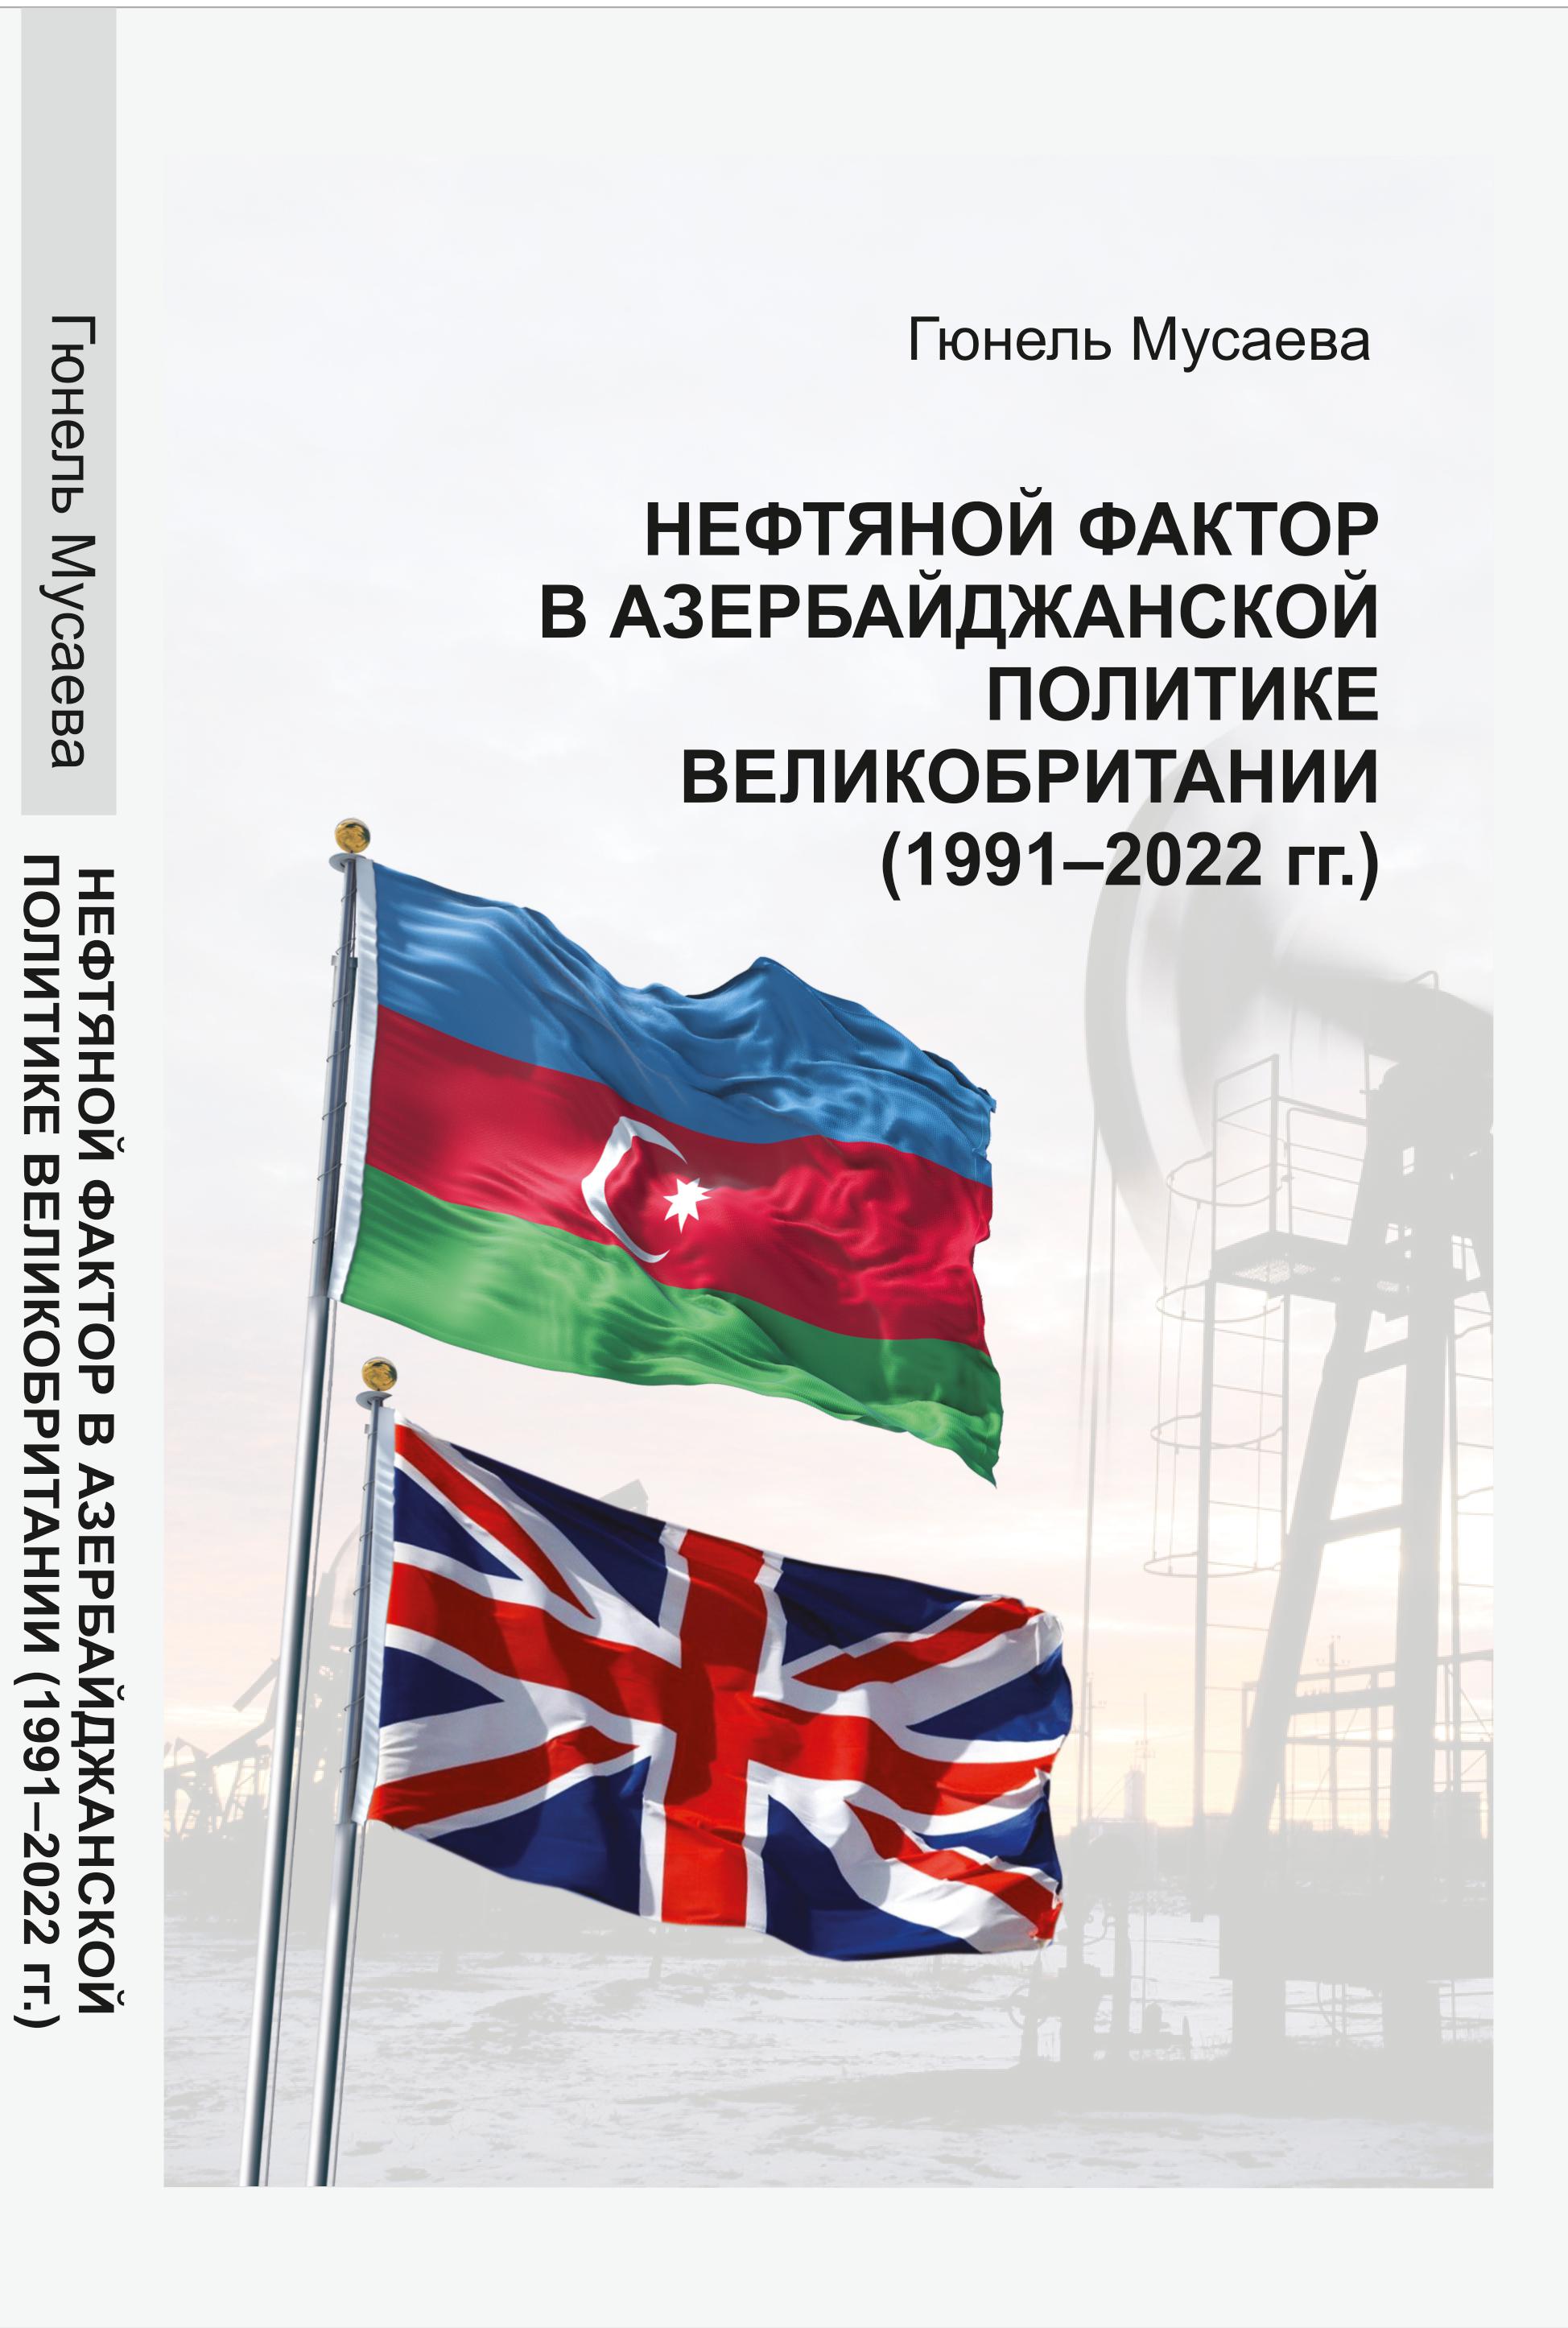 Мусаева Г.M. Нефтяной фактор в азербайджанской политике Великобритании (1991-2022 гг.)